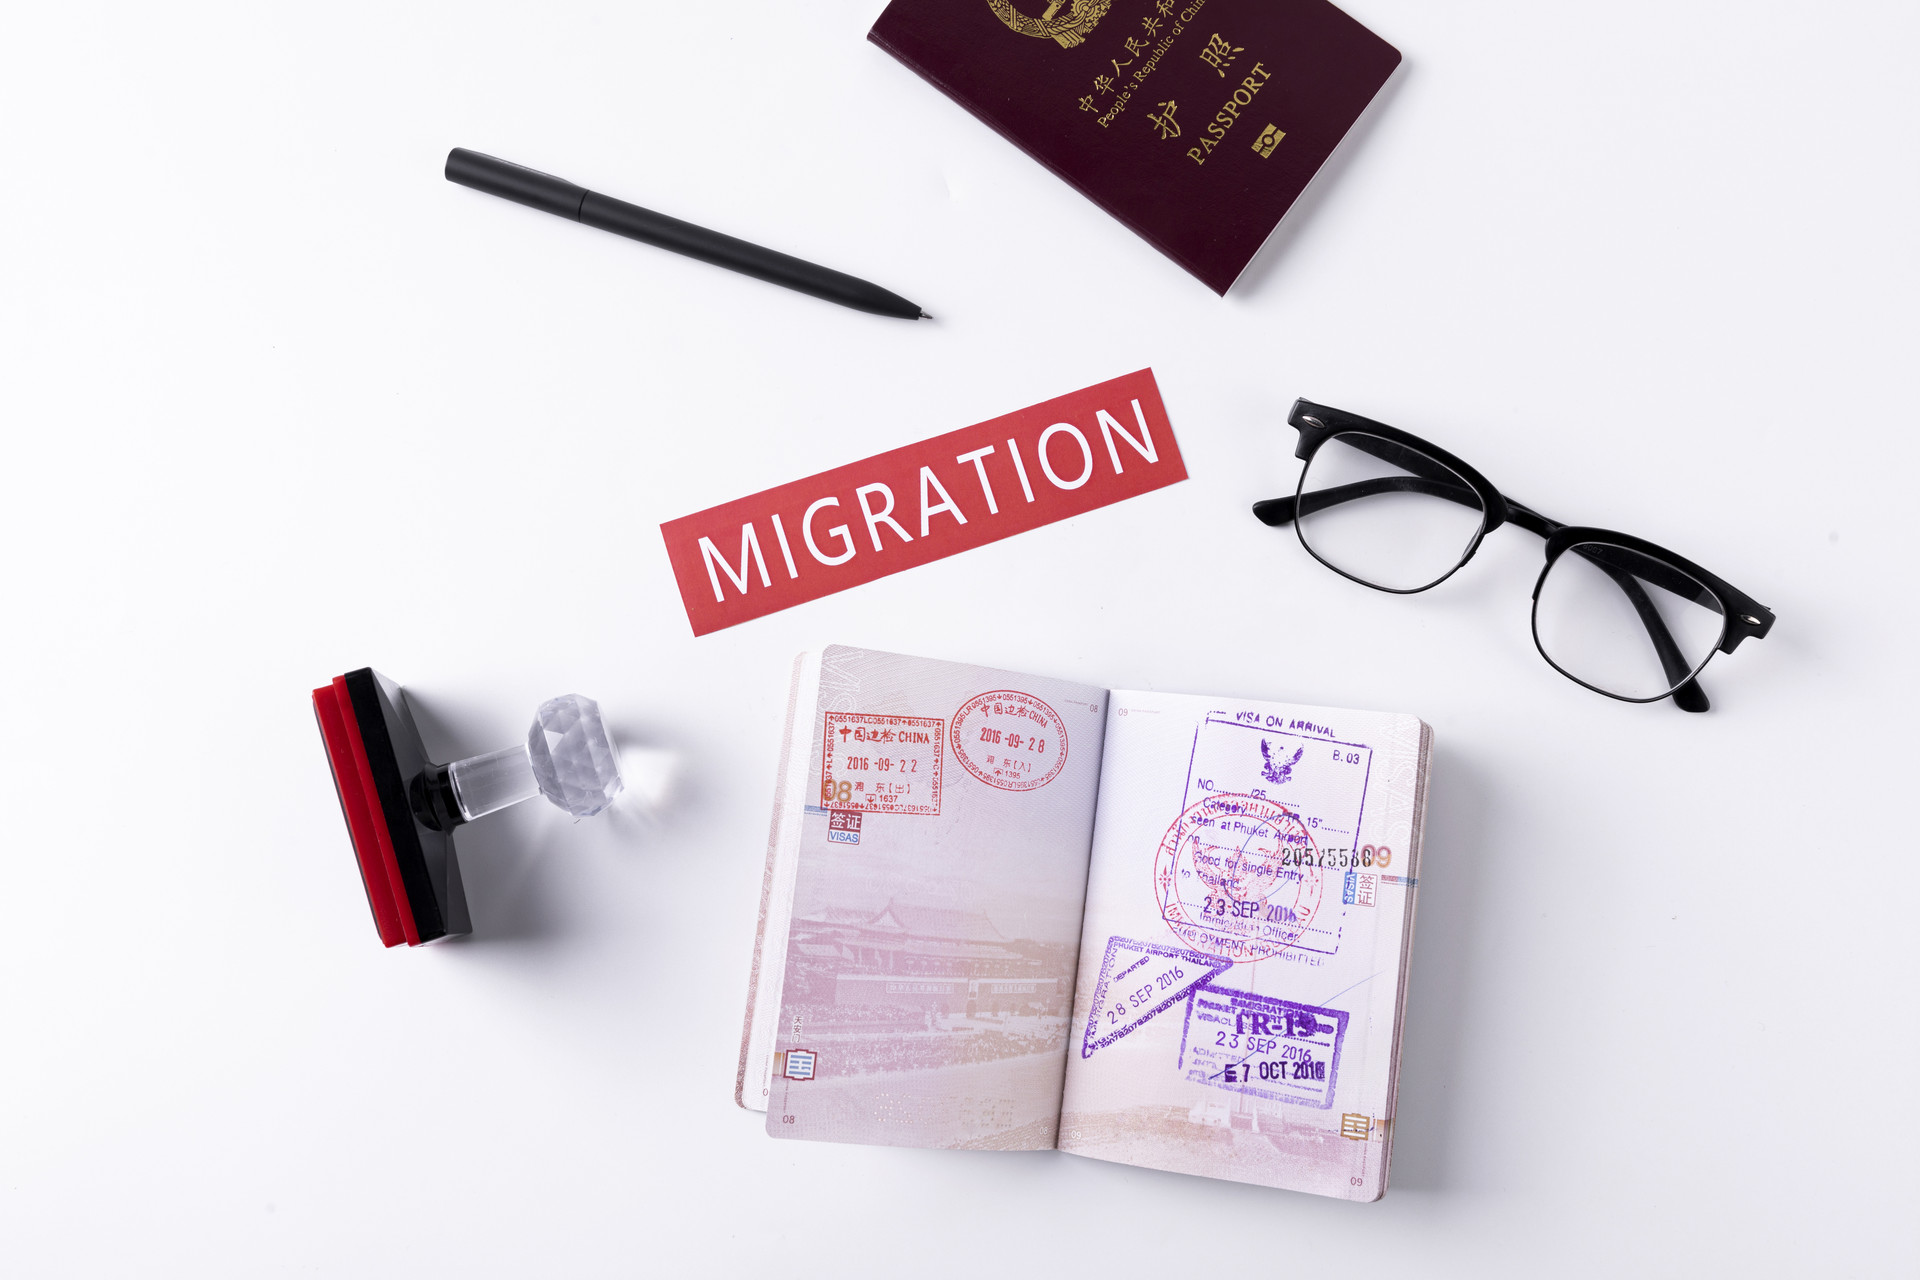 佛山去英国留学移民需要满足哪些条件?